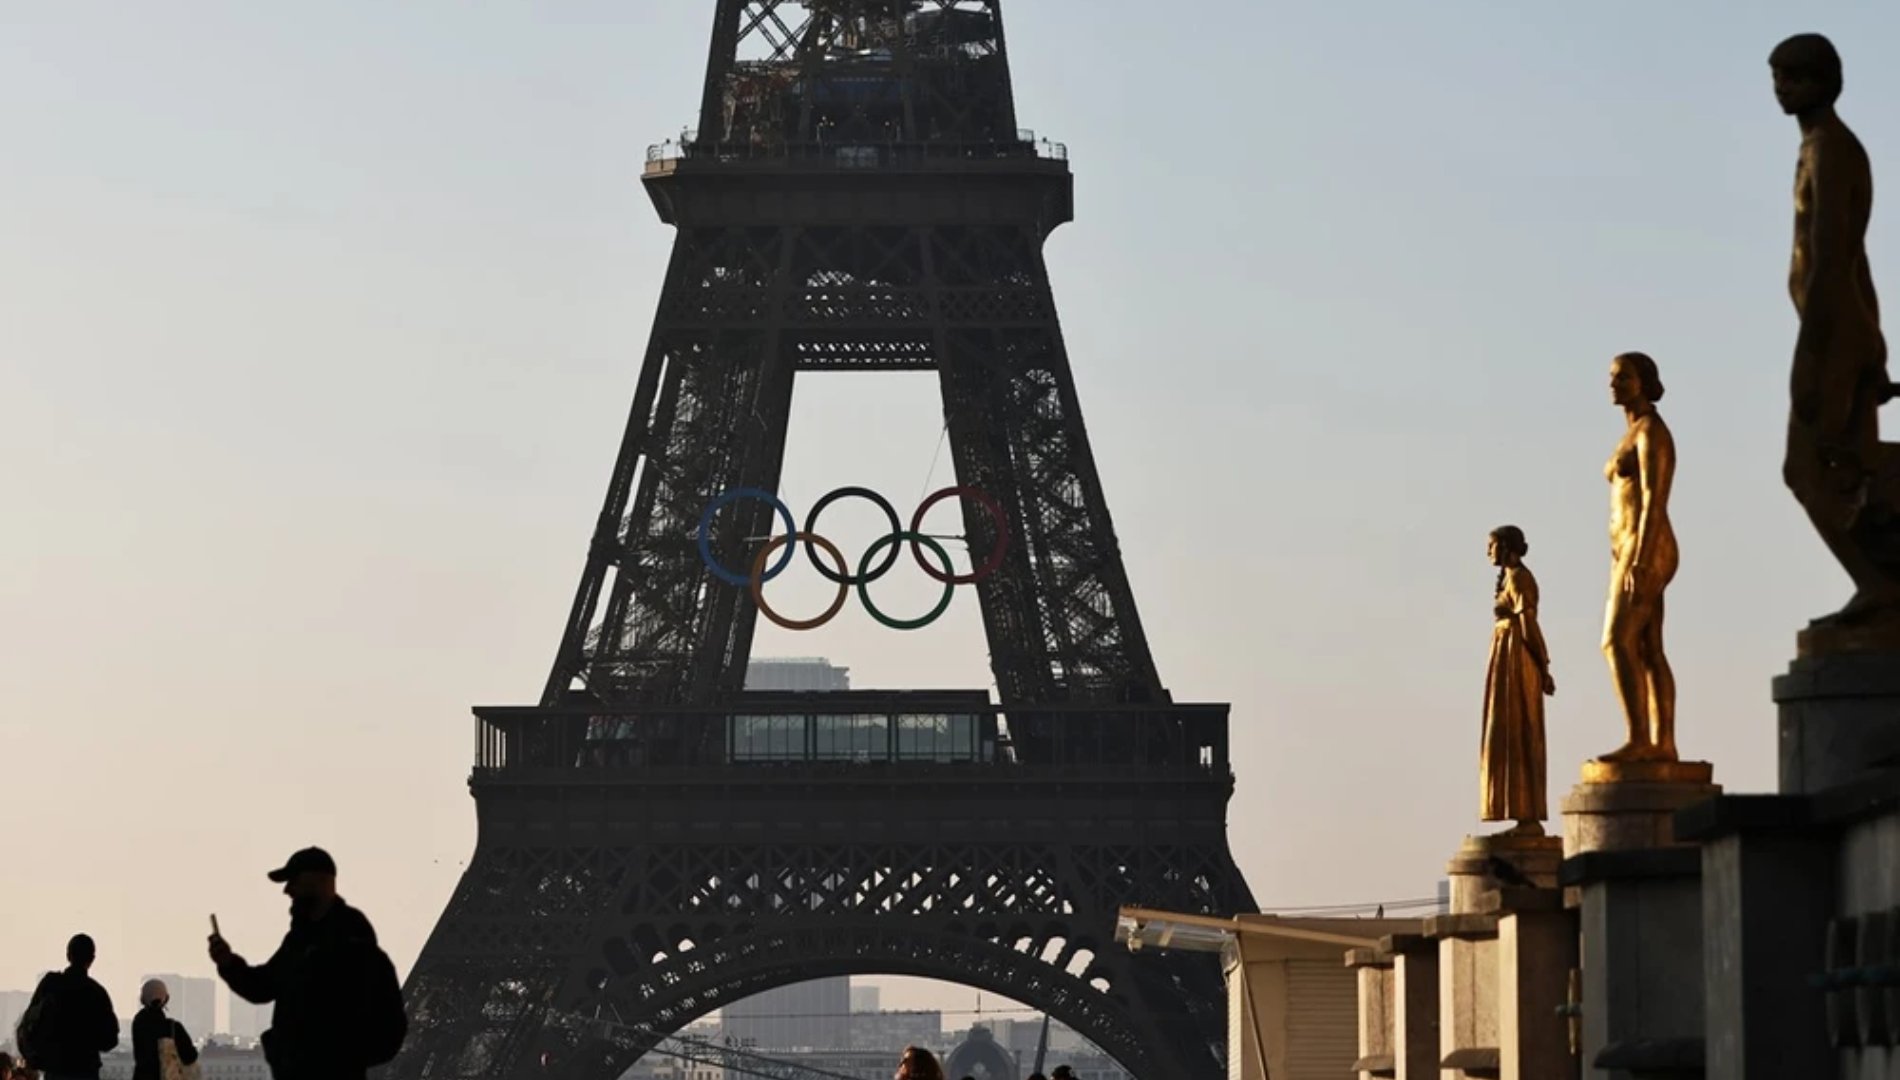 Pháp tăng cường an ninh trước thềm Olympic sau vụ tấn công bằng xe tại quán cà phê